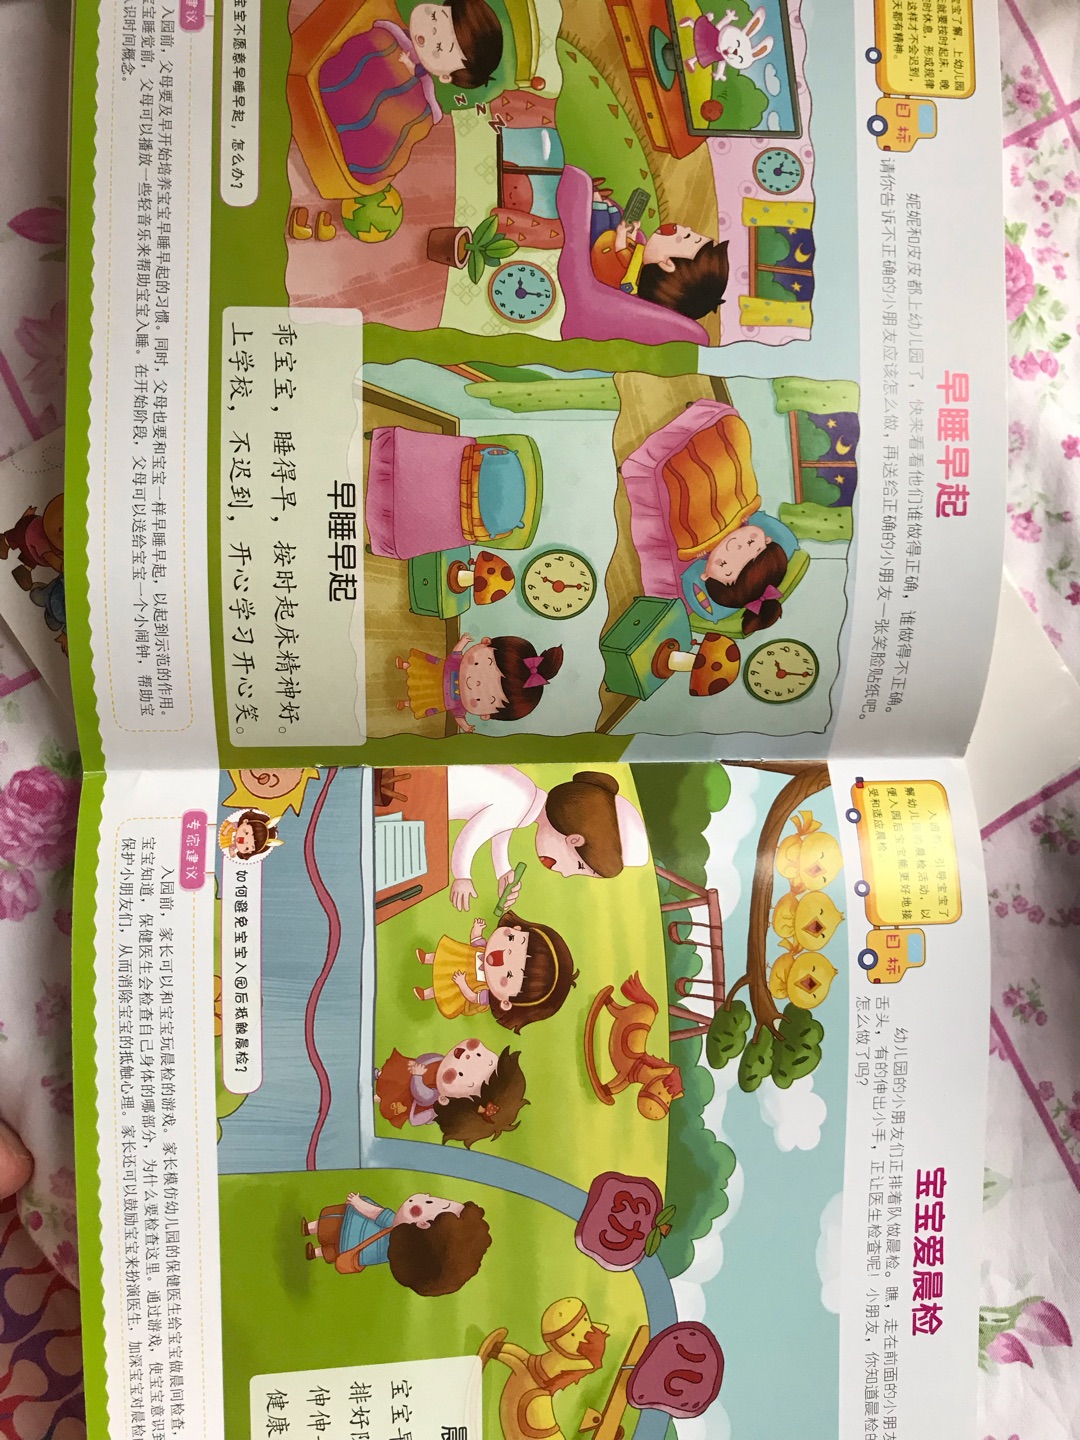 宝贝怎么上幼儿园这套书买来是提前给他培训一下的，觉得很不错，里面也比较贴近幼儿园的一些生活作息规律学习之类的。